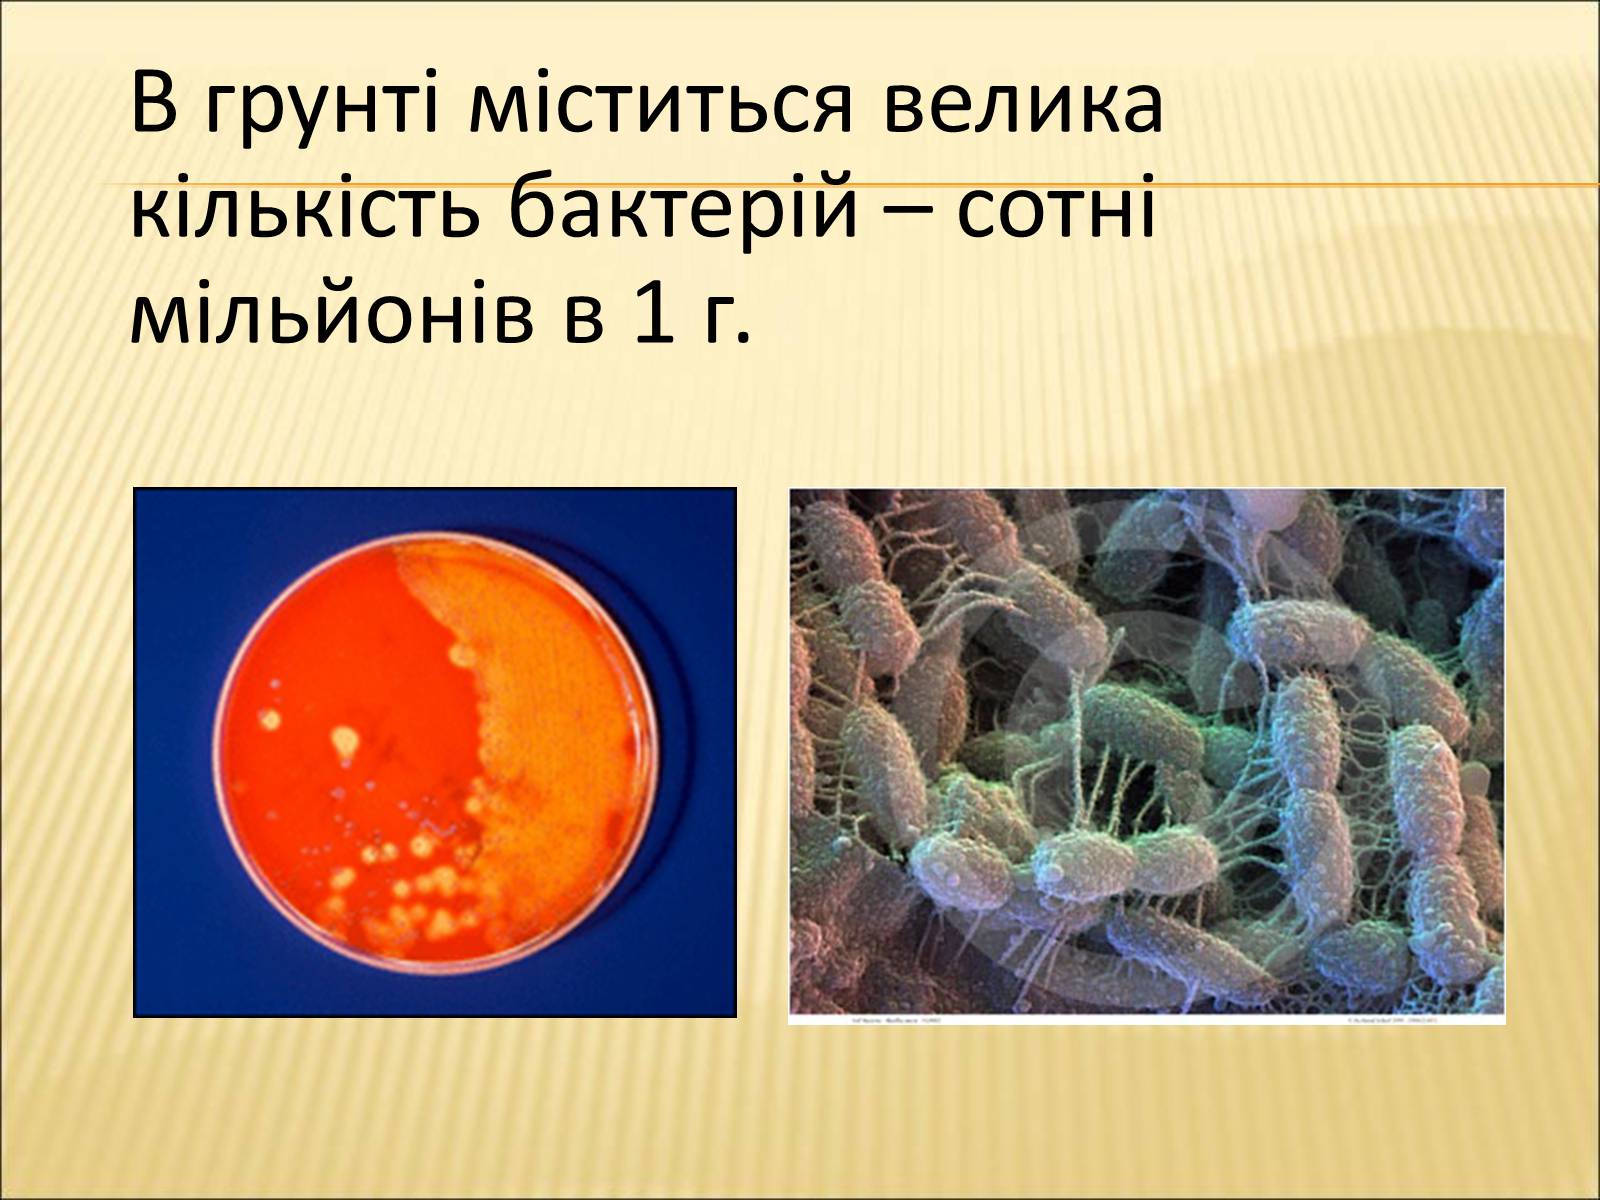 Название группы организмов бактерии. Микроорганизмы в природе. Бактерии в жизни человека. Почвенные микроорганизмы. Бактерии в природе и жизни человека.